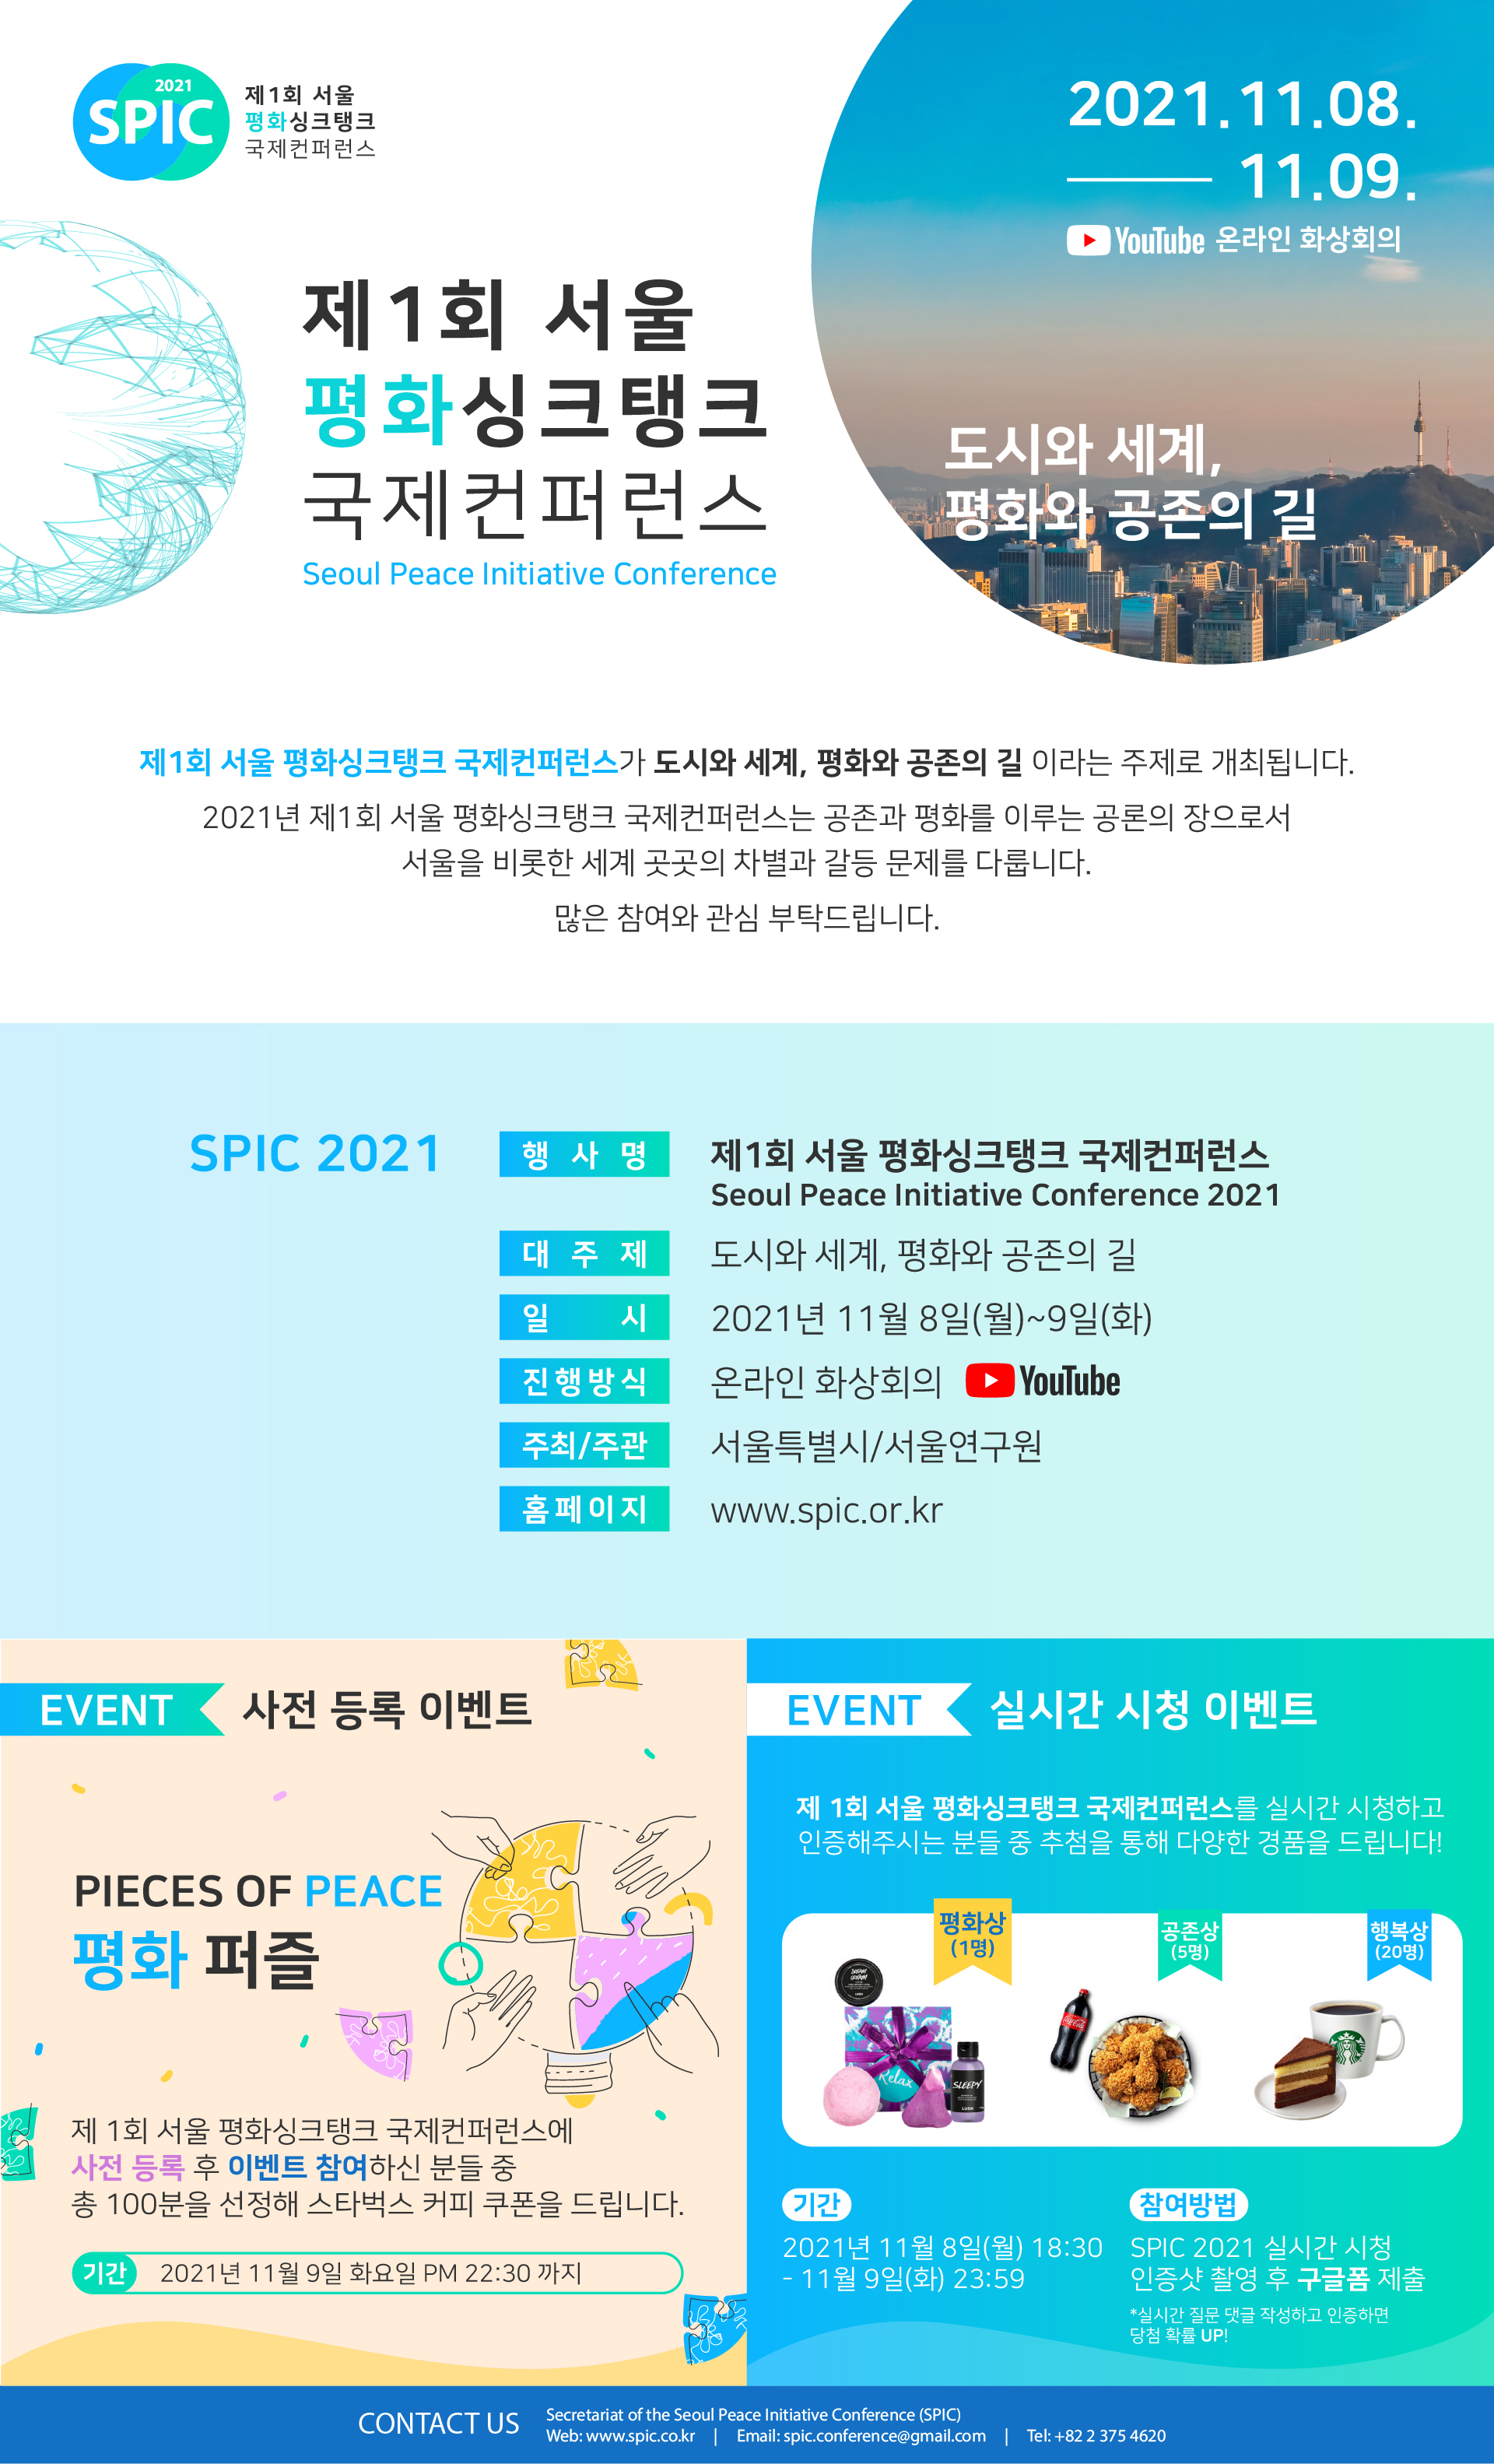 [SPIC 2021] 제1회 서울 평화싱크탱크 국제컨퍼런스 시청하고 다양한 이벤트 경품 받아가세요!